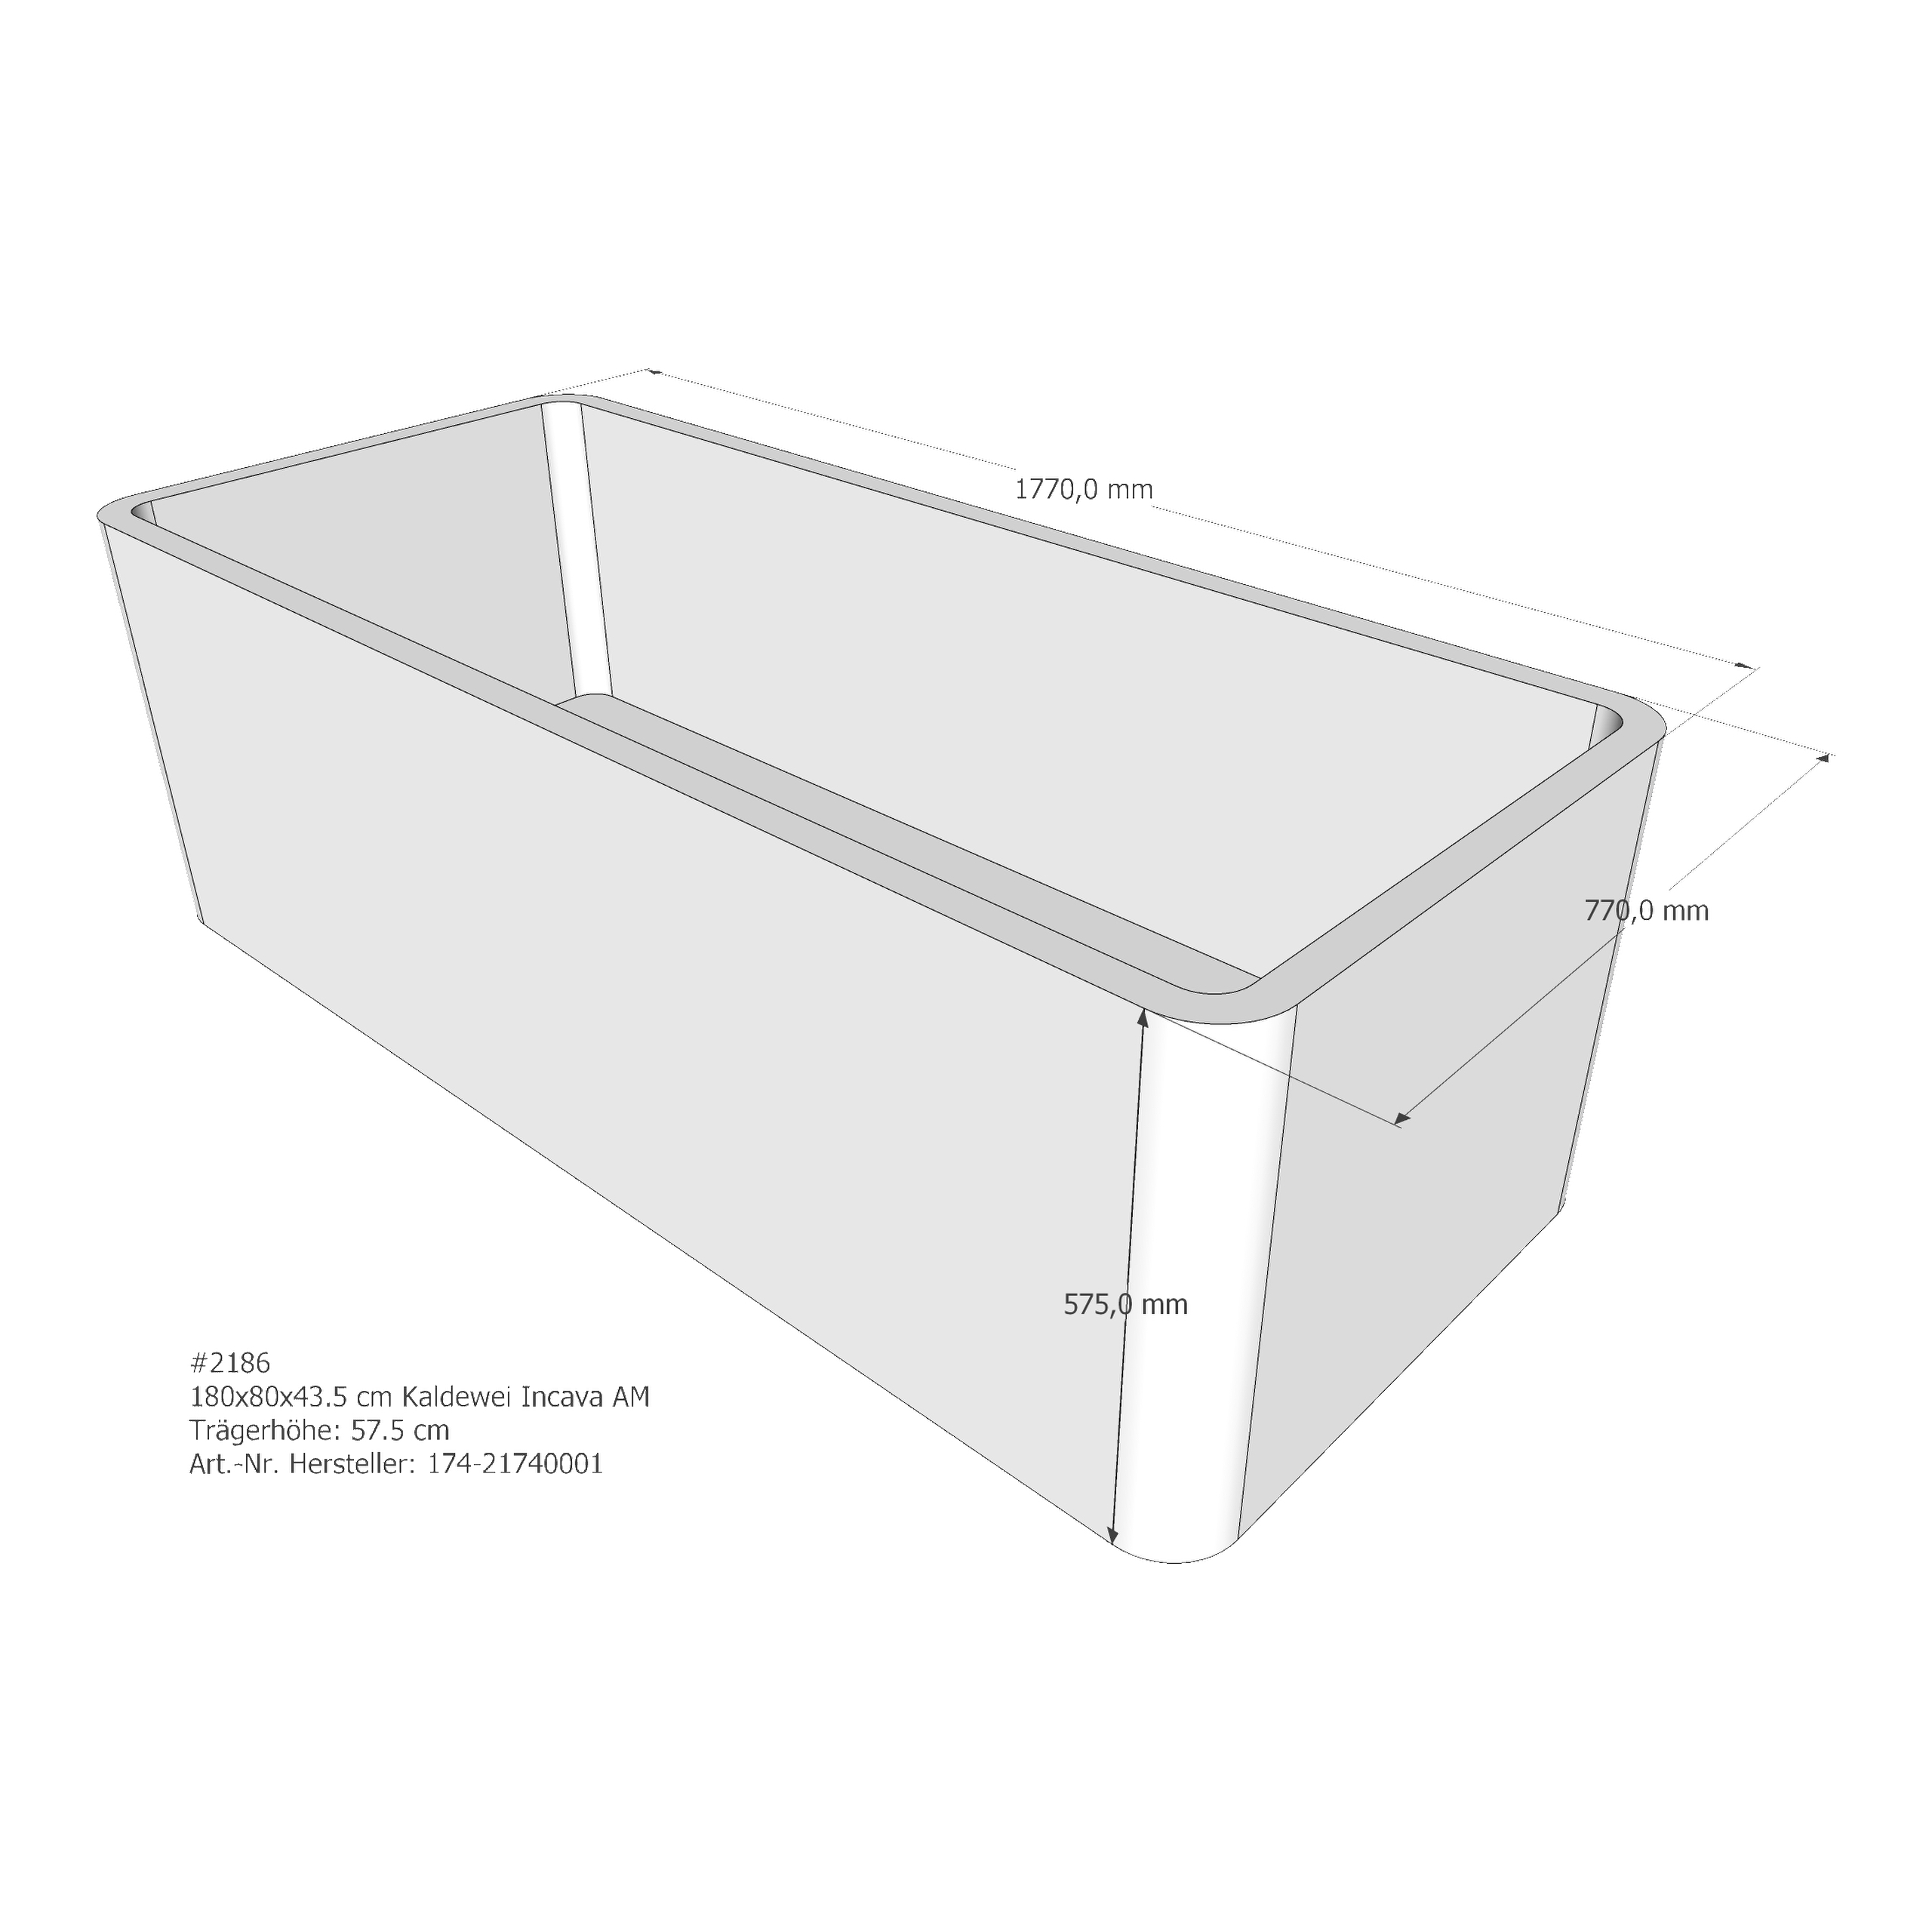 Badewannenträger für Kaldewei Incava 180 × 80 × 43,5 cm